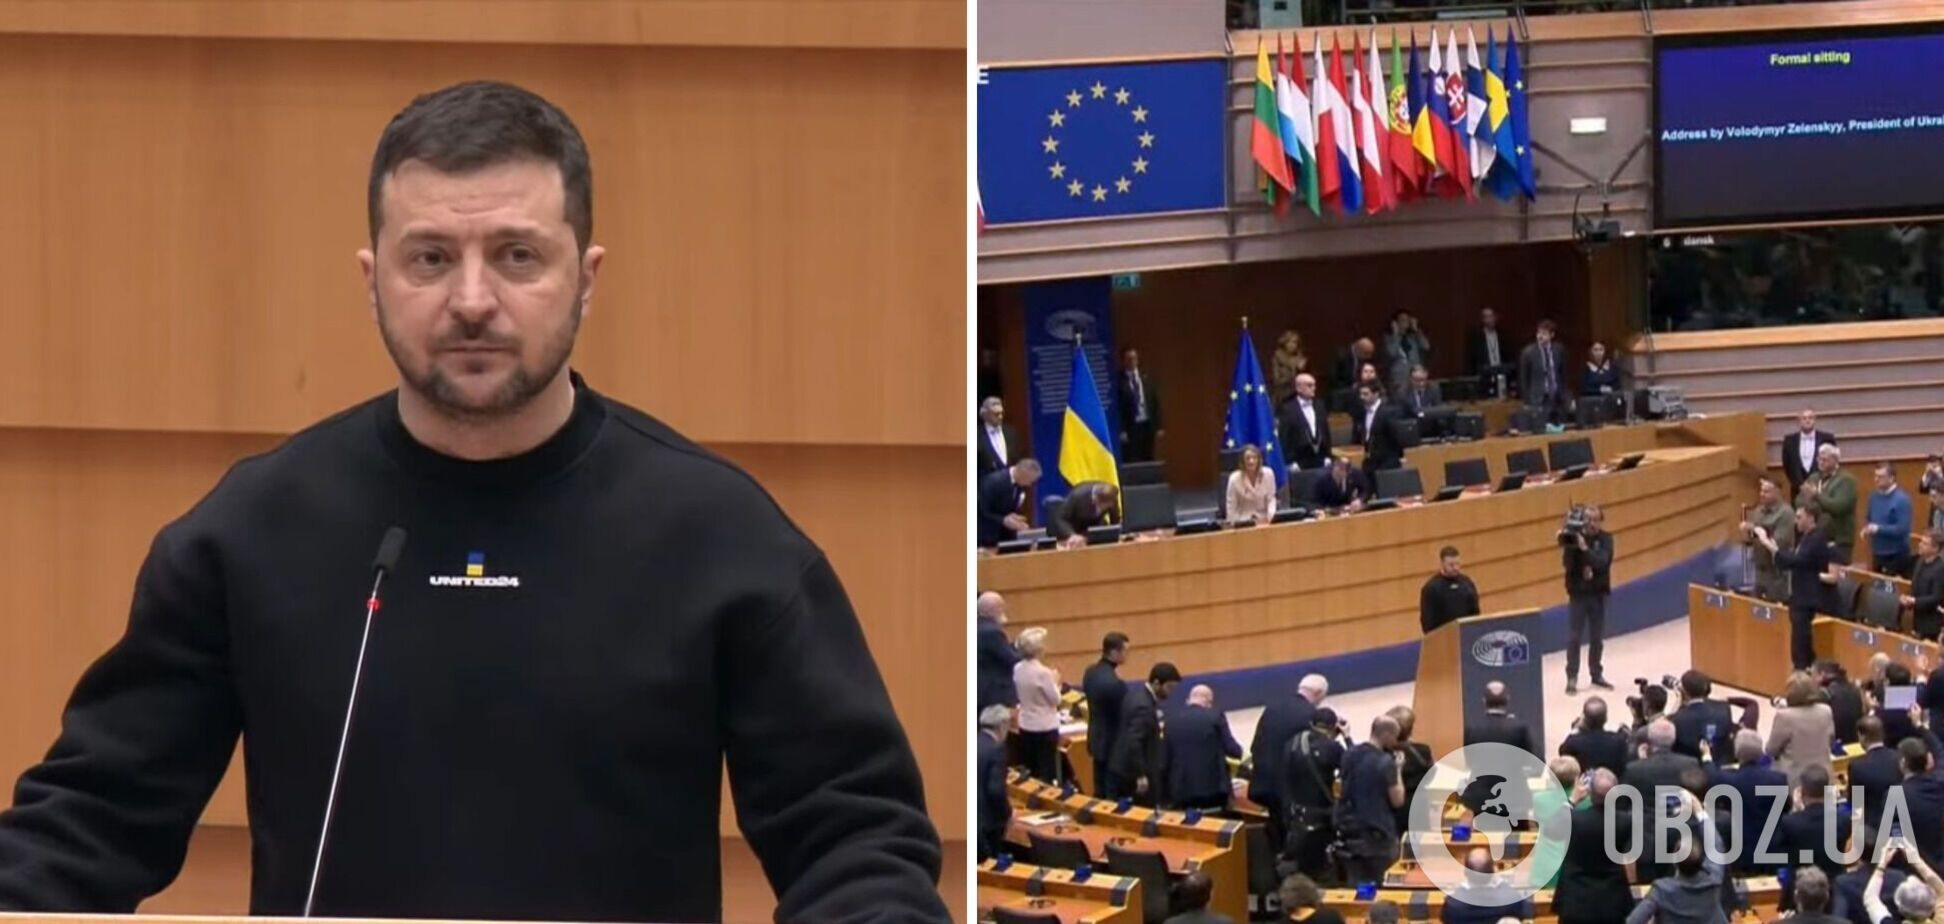 Зеленський не стримав емоцій під час виступу в Європарламенті. Фото і відео